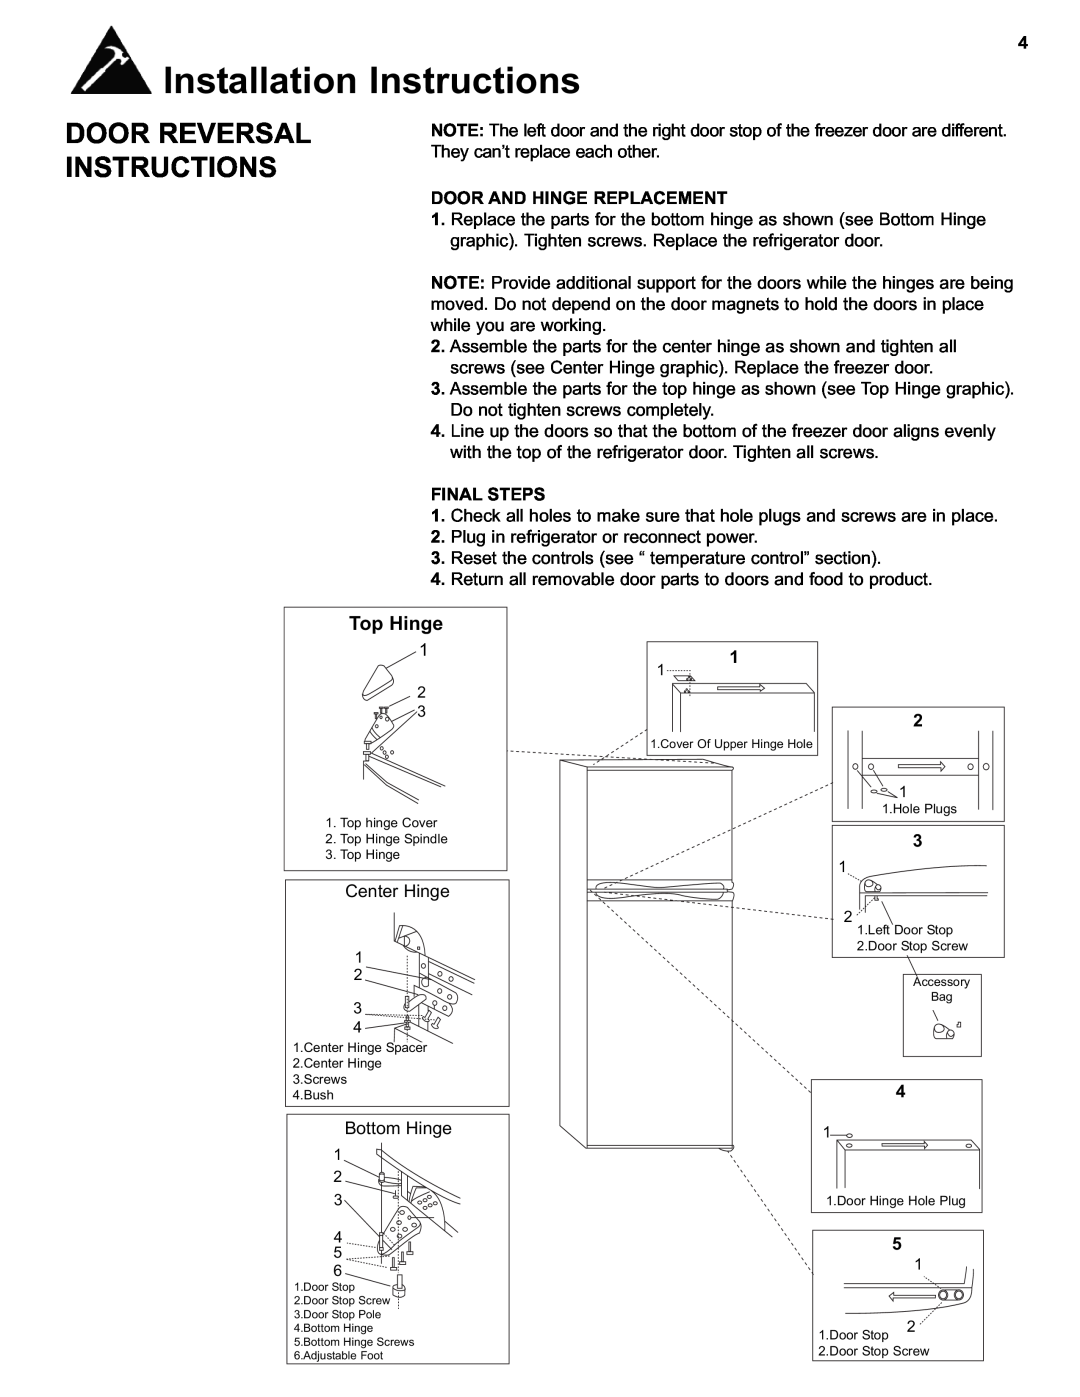 Avanti FF1212W Installation Instructions, Door Reversal Instructions, Top Hinge, Door And Hinge Replacement, Final Steps 